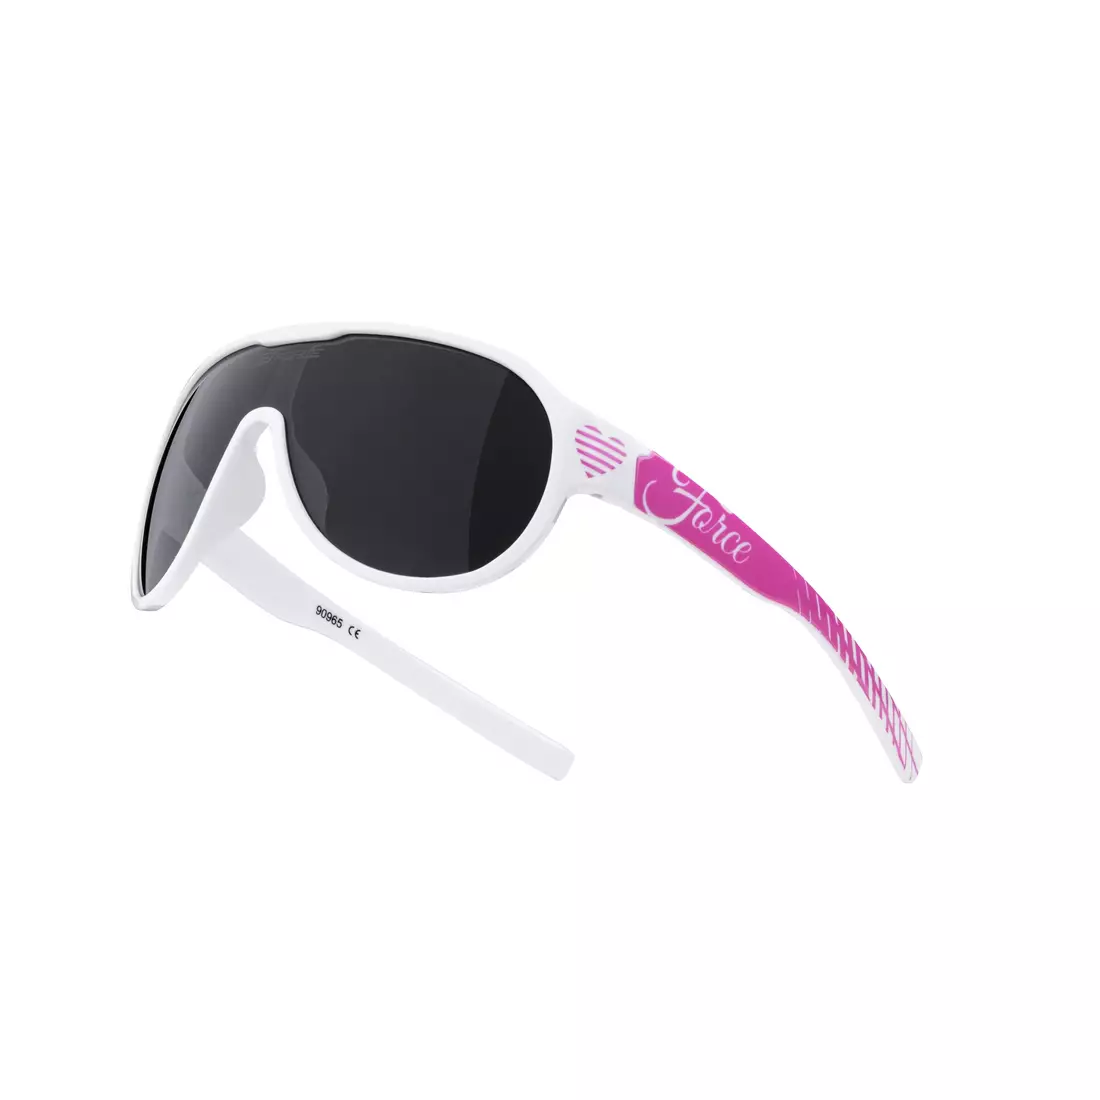 FORCE dámské / mládežnické brýle, sluneční brýle ROSIE, bílé a růžové, černé čočky 90965